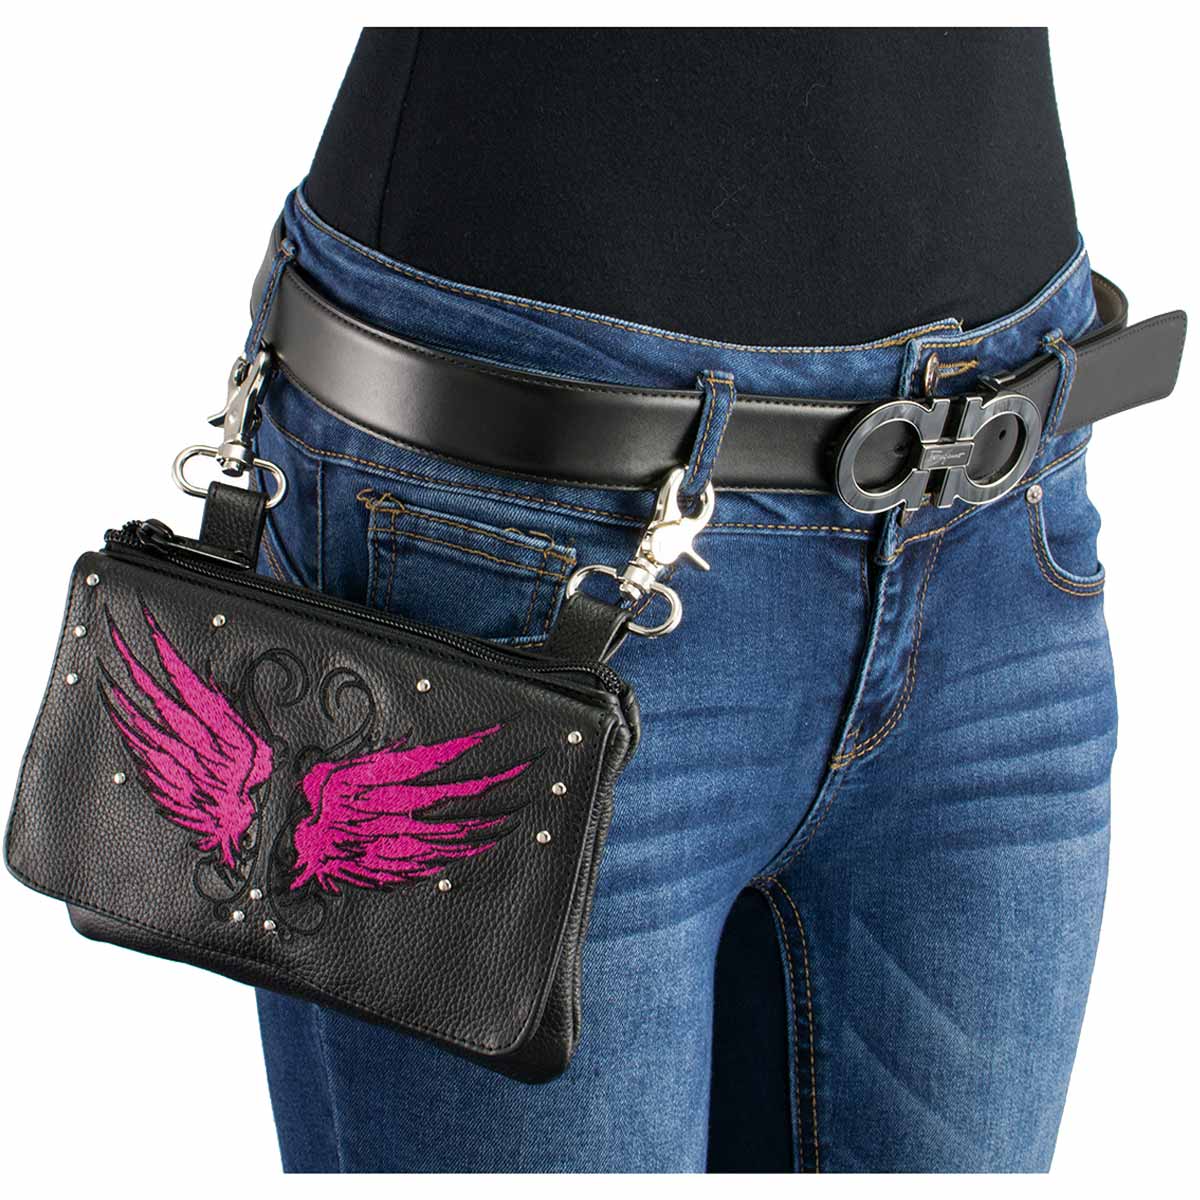 Milwaukee Leather MP8850 Ladies 'Winged' Leather Black and Pink Multi-Pocket Belt Bag